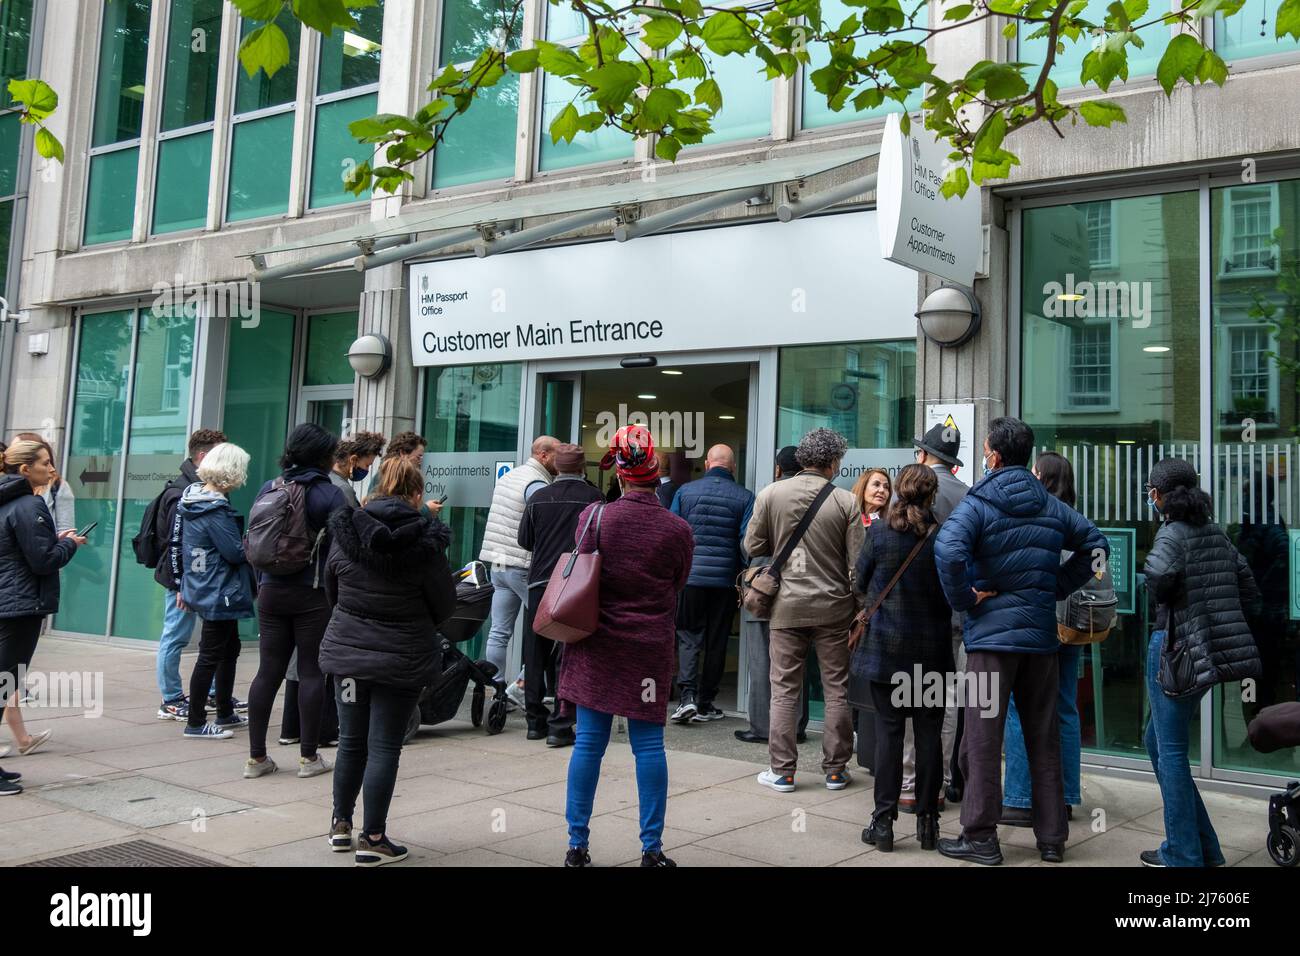 London, Victoria - 2022. Mai: Menschen, die wegen Verzögerungen und hoher Bearbeitungszeiten beim Passbüro Ihrer Majestät Schlange stehen Stockfoto